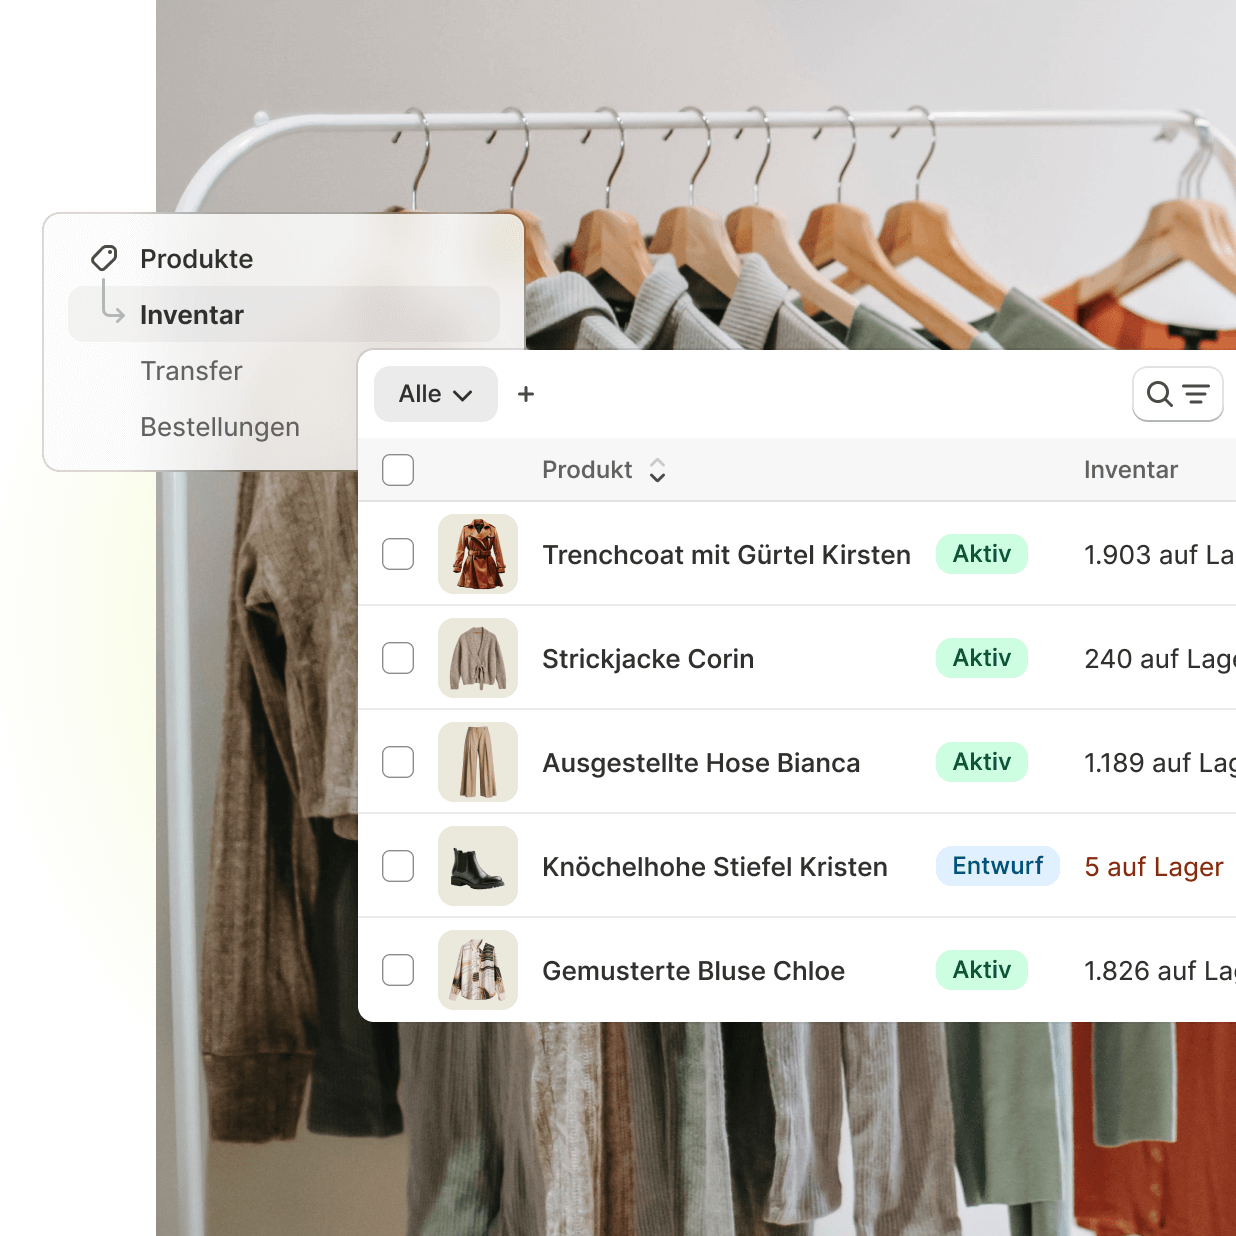 Ein kleiner Schnappschuss von Shopify Point of Sale mit Echtzeit-Inventarberichten für vier Bekleidungsartikel, um die integrierten Inventarstatusaktualisierungen von Shopify zu veranschaulichen.